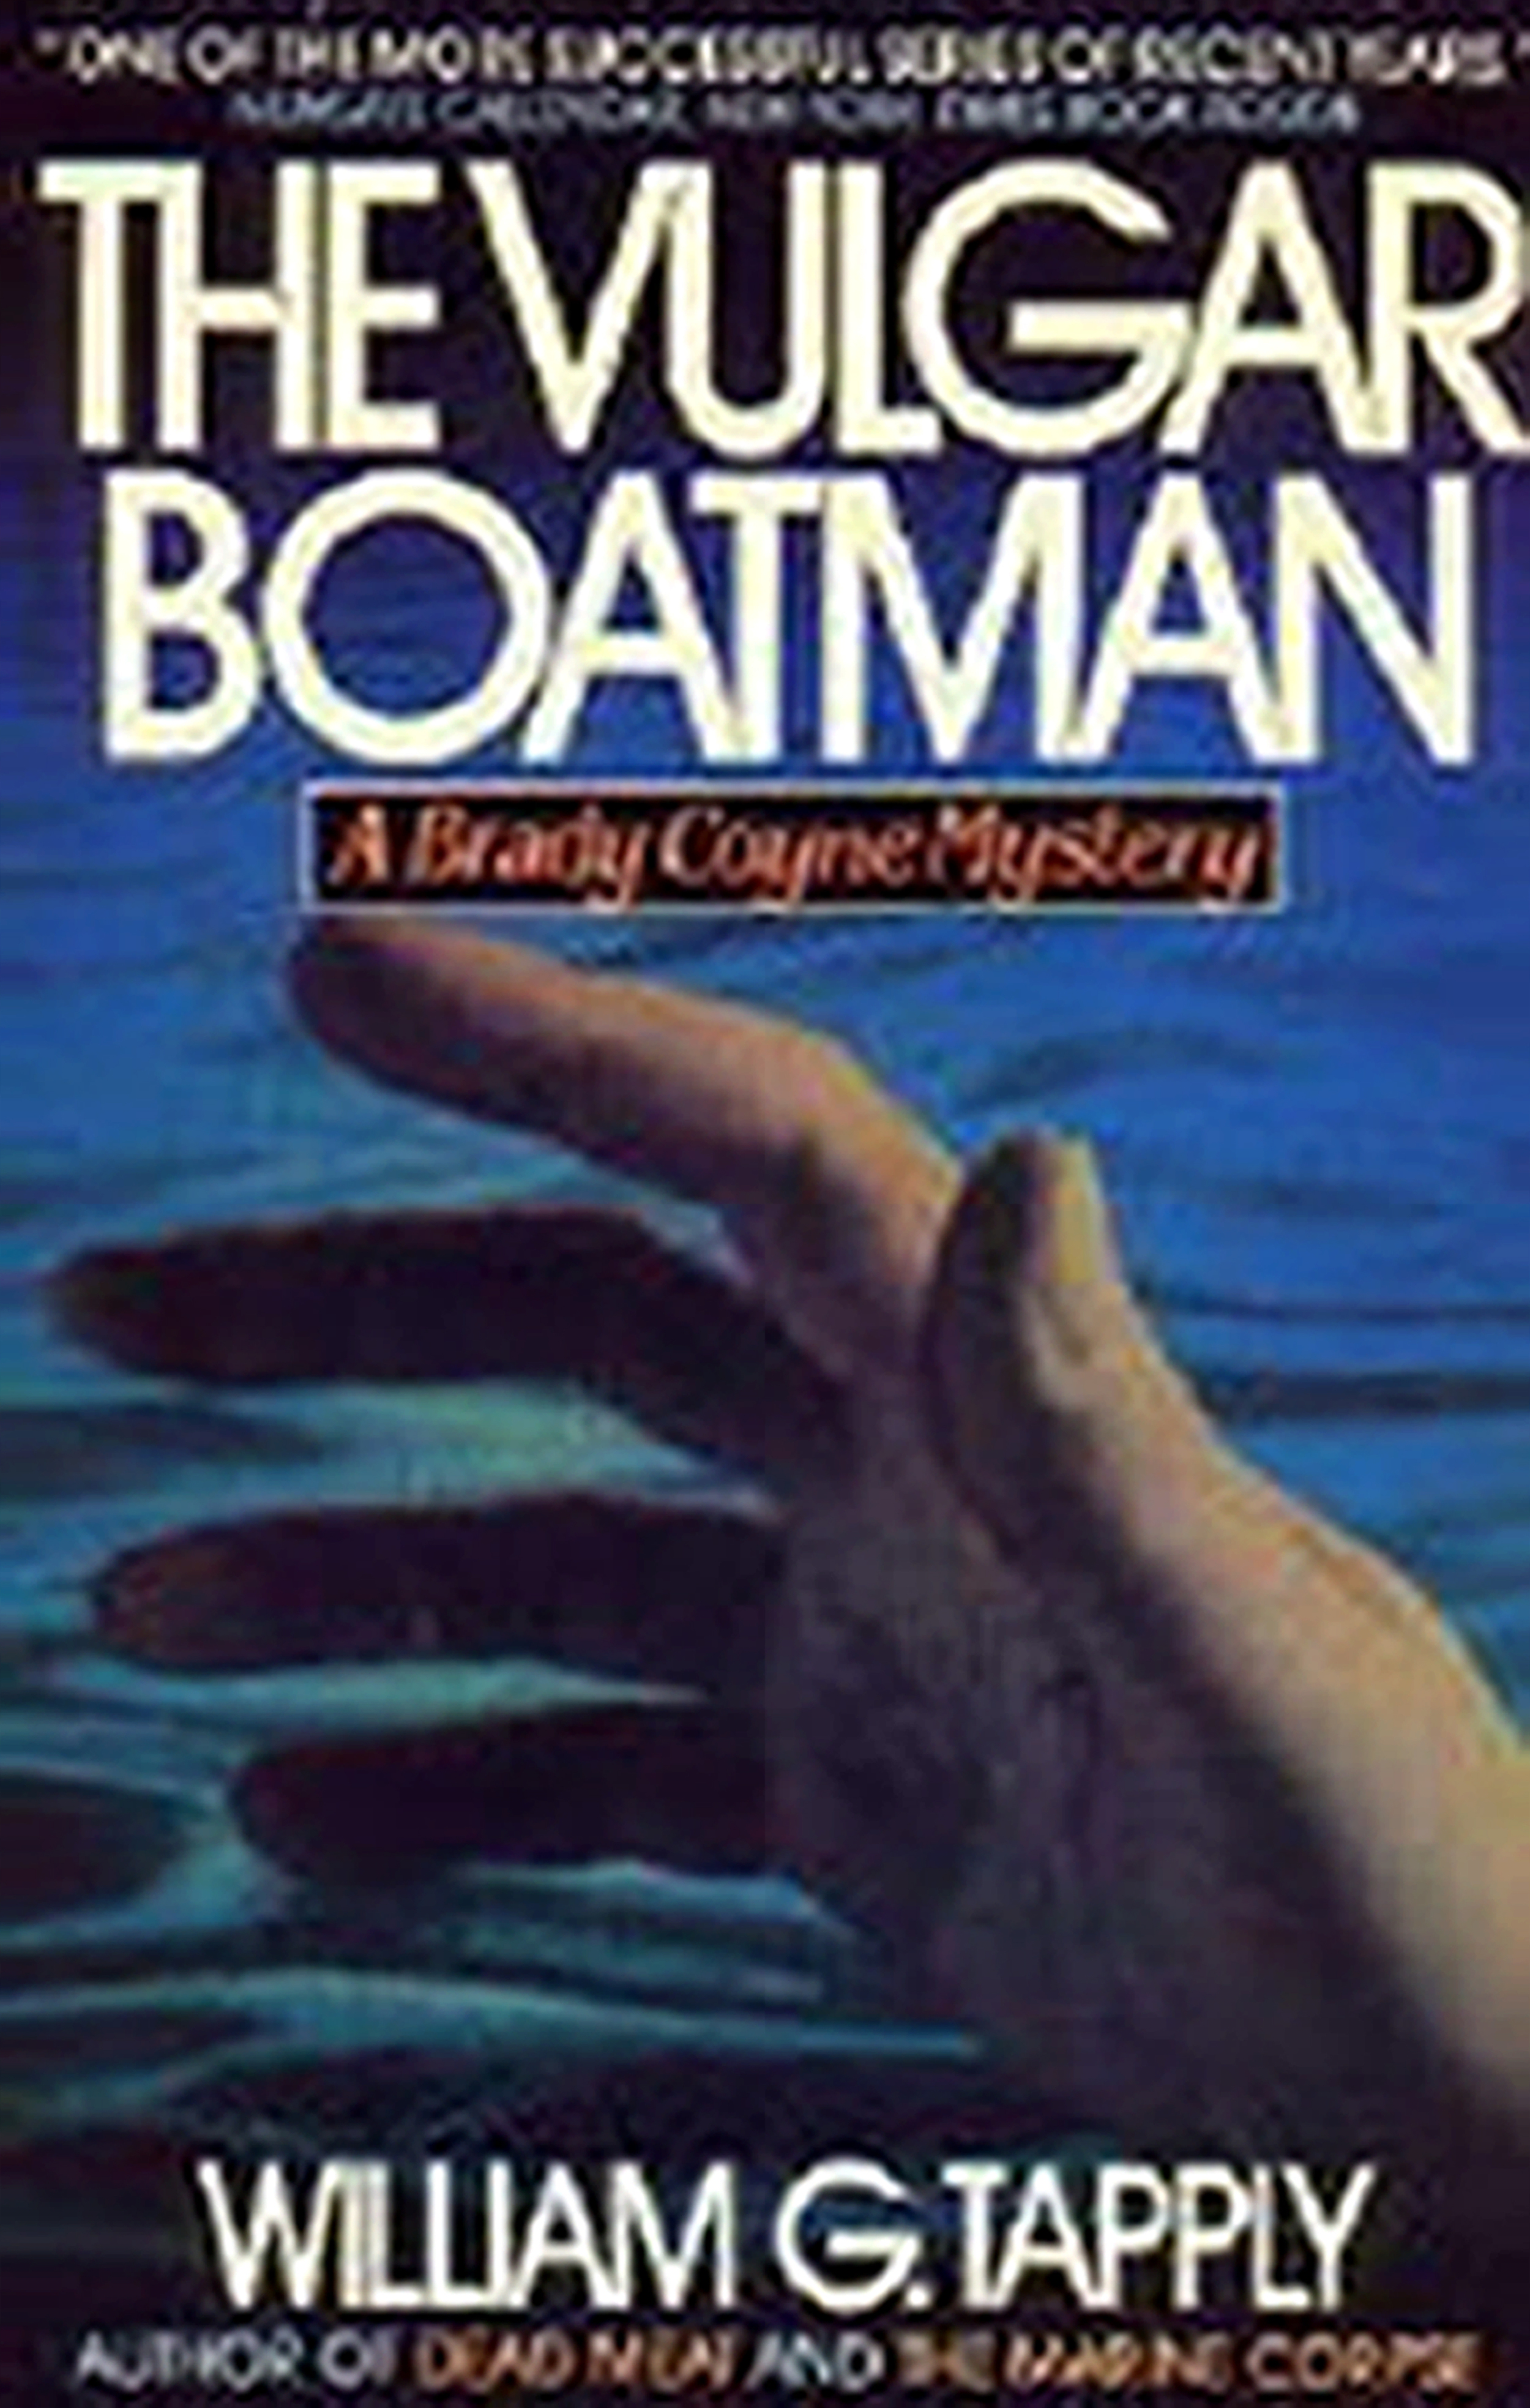  Tapply, mystery, novel, Vulgar Boatman, suspense, thriller 